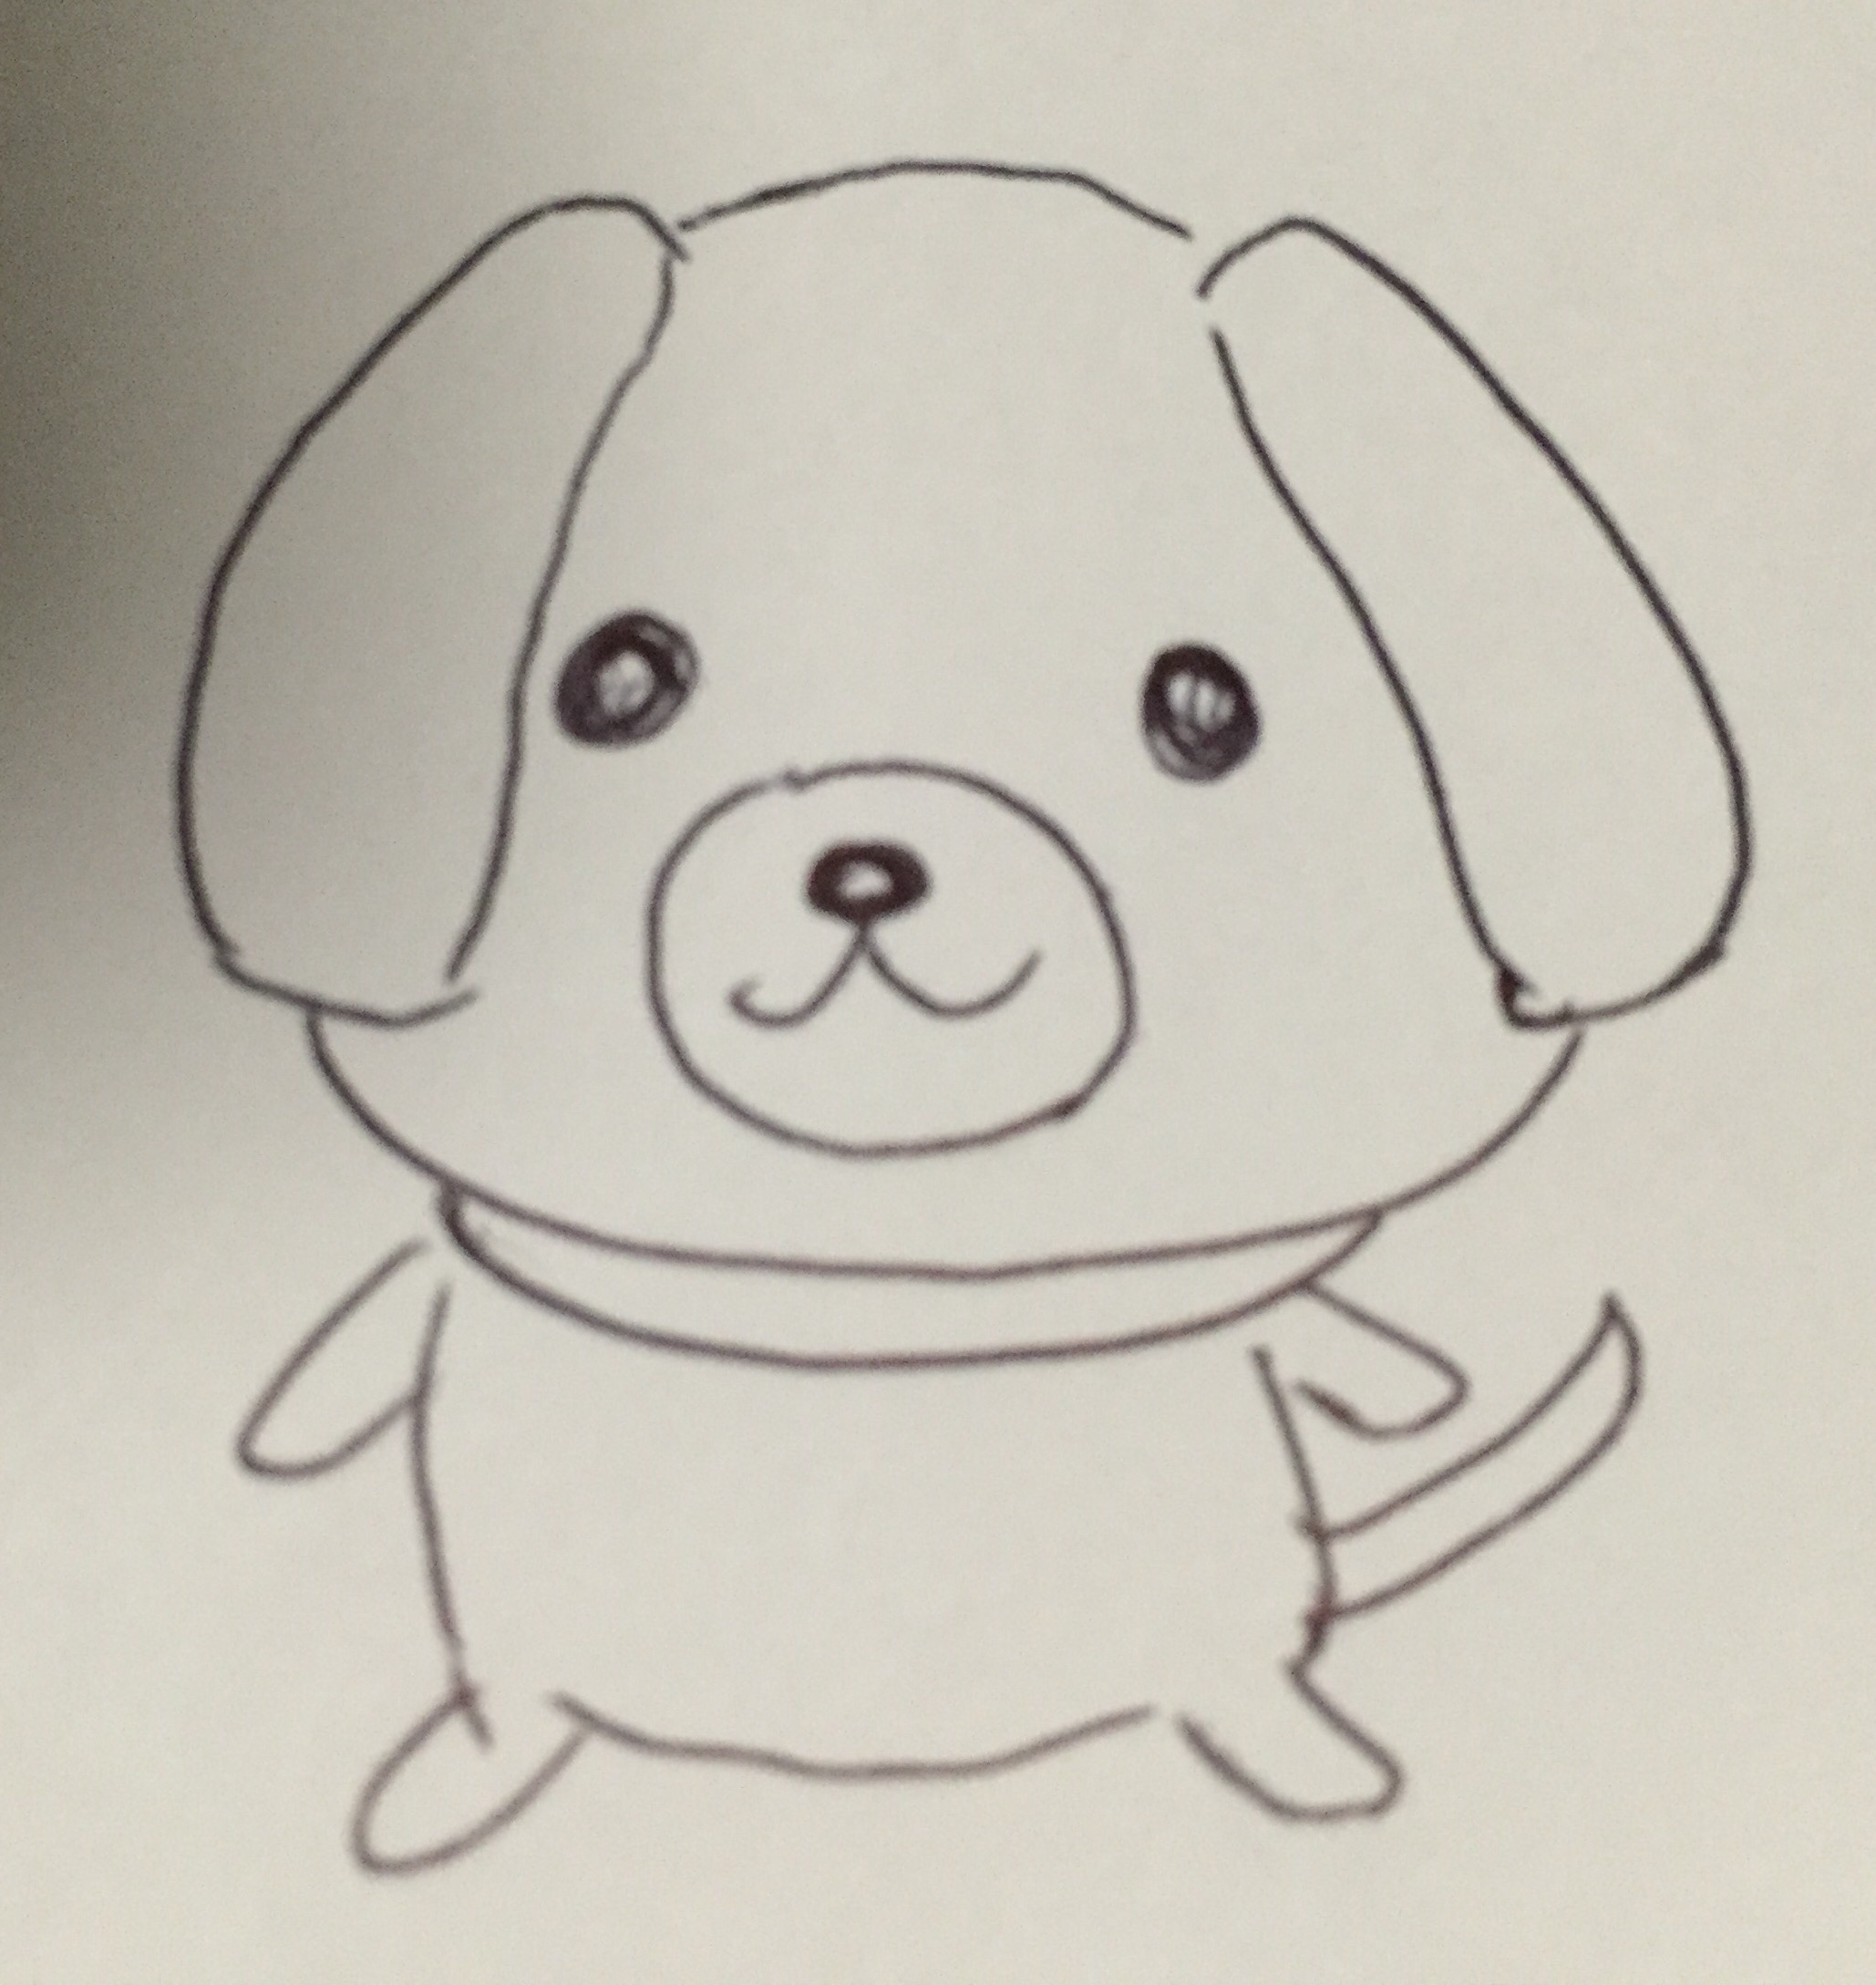 年賀状18戌年 犬 のイラストの描き方 手作りで可愛い絵を描く方法を考えてみた